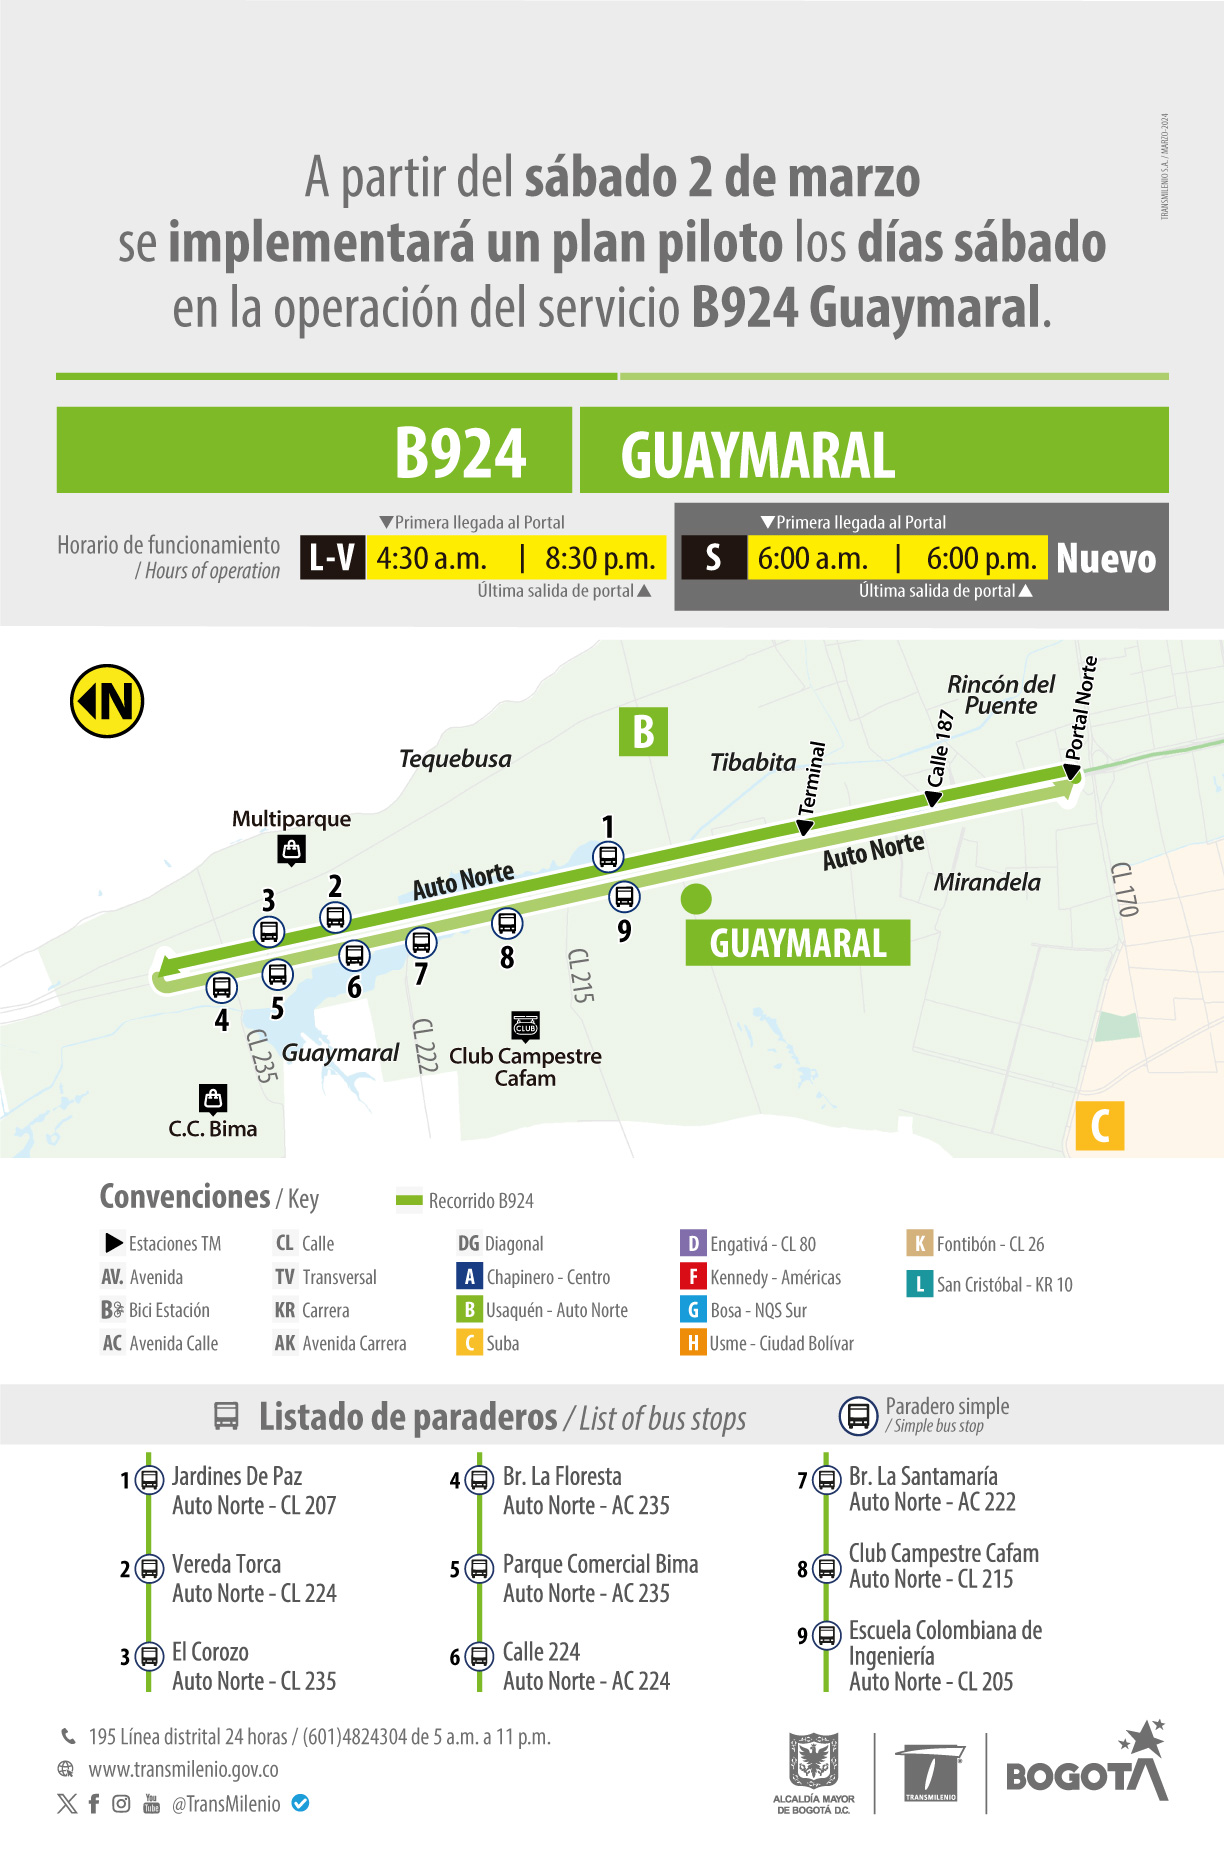 Servicio B924 Guaymaral hará plan piloto los sábados